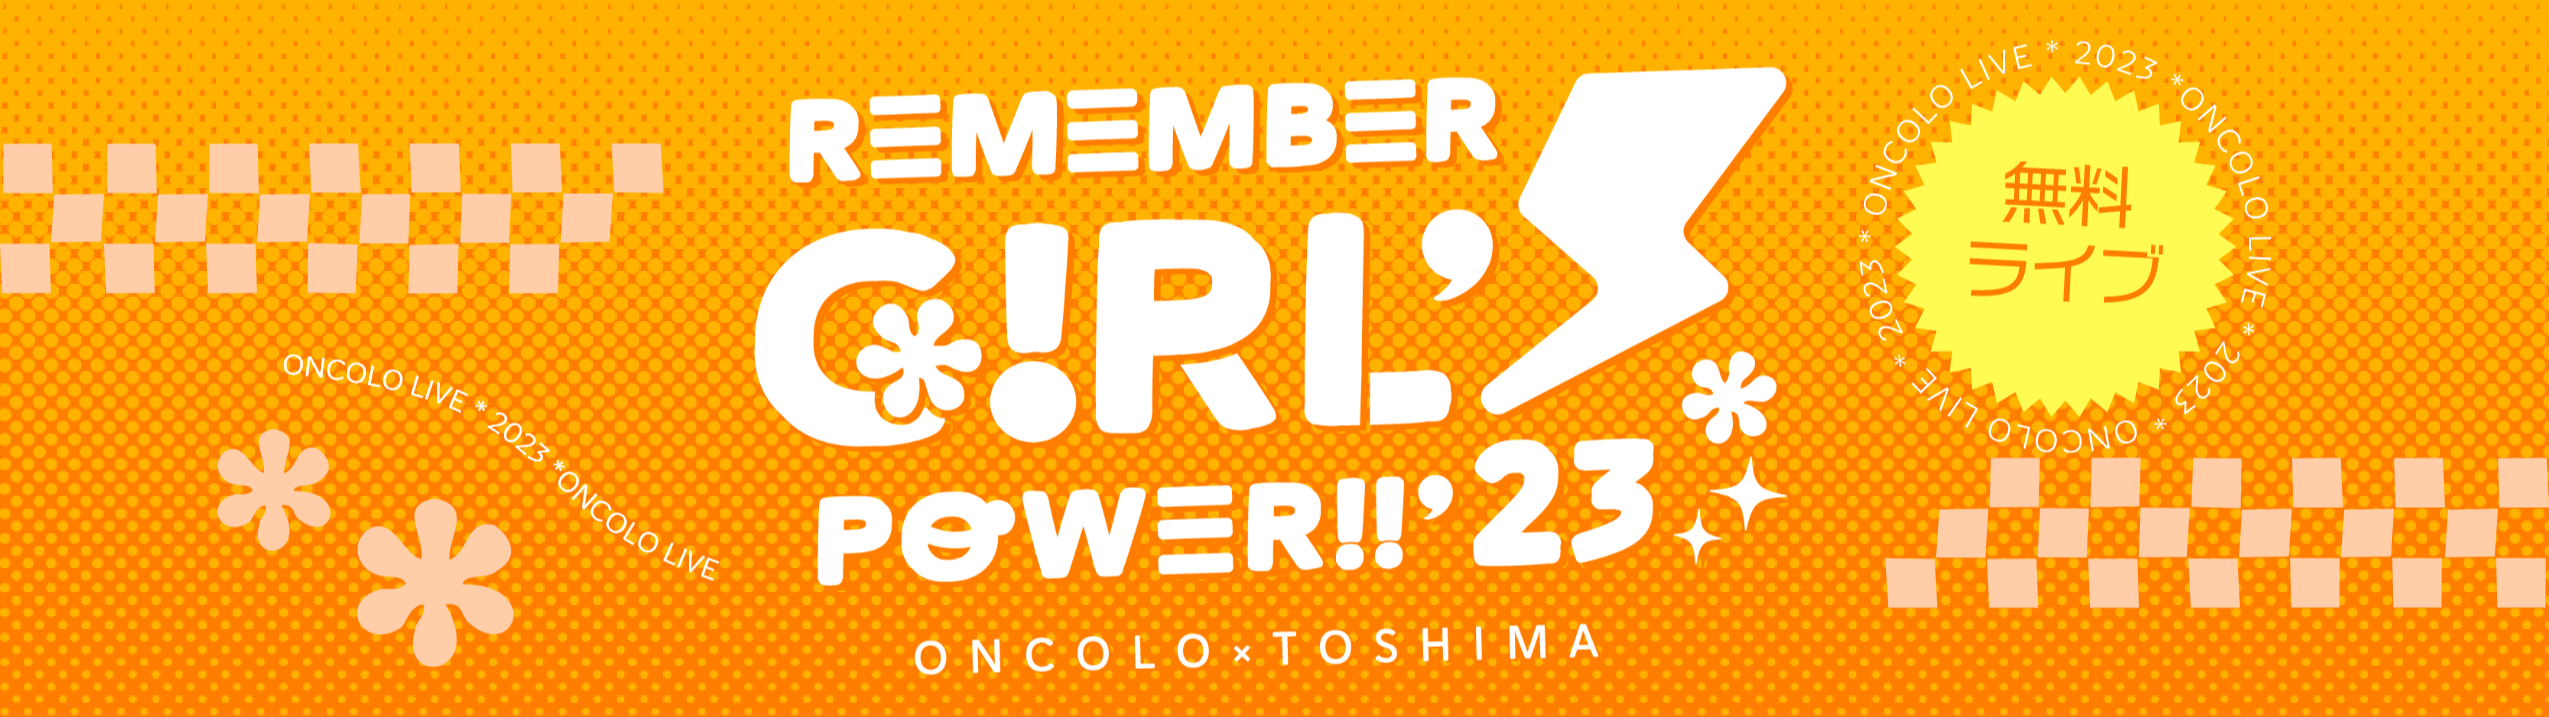 小児・AYA世代のがん啓発チャリティーライブ「Remember Girl’s Power!!」